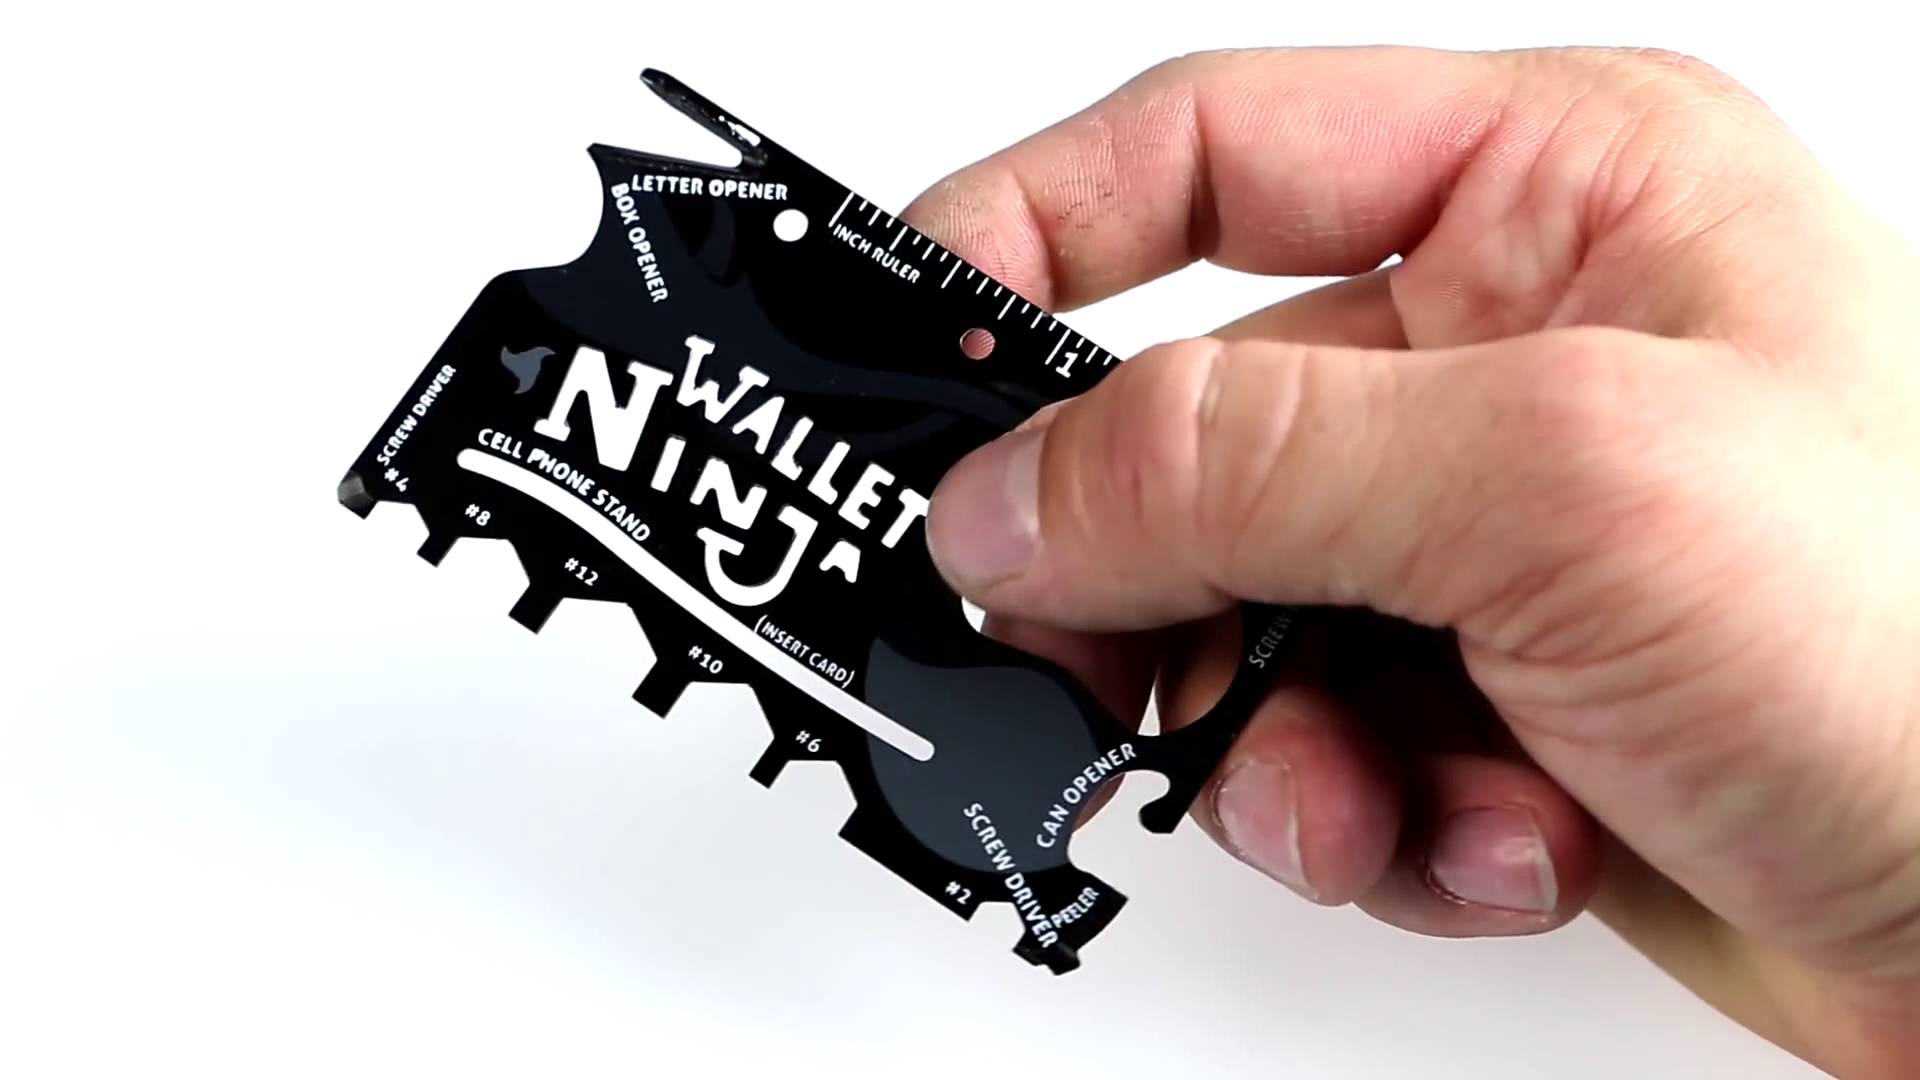 Wallet Ninja 18 in 1 Multi-Tool Thumbs Up WALNIN 